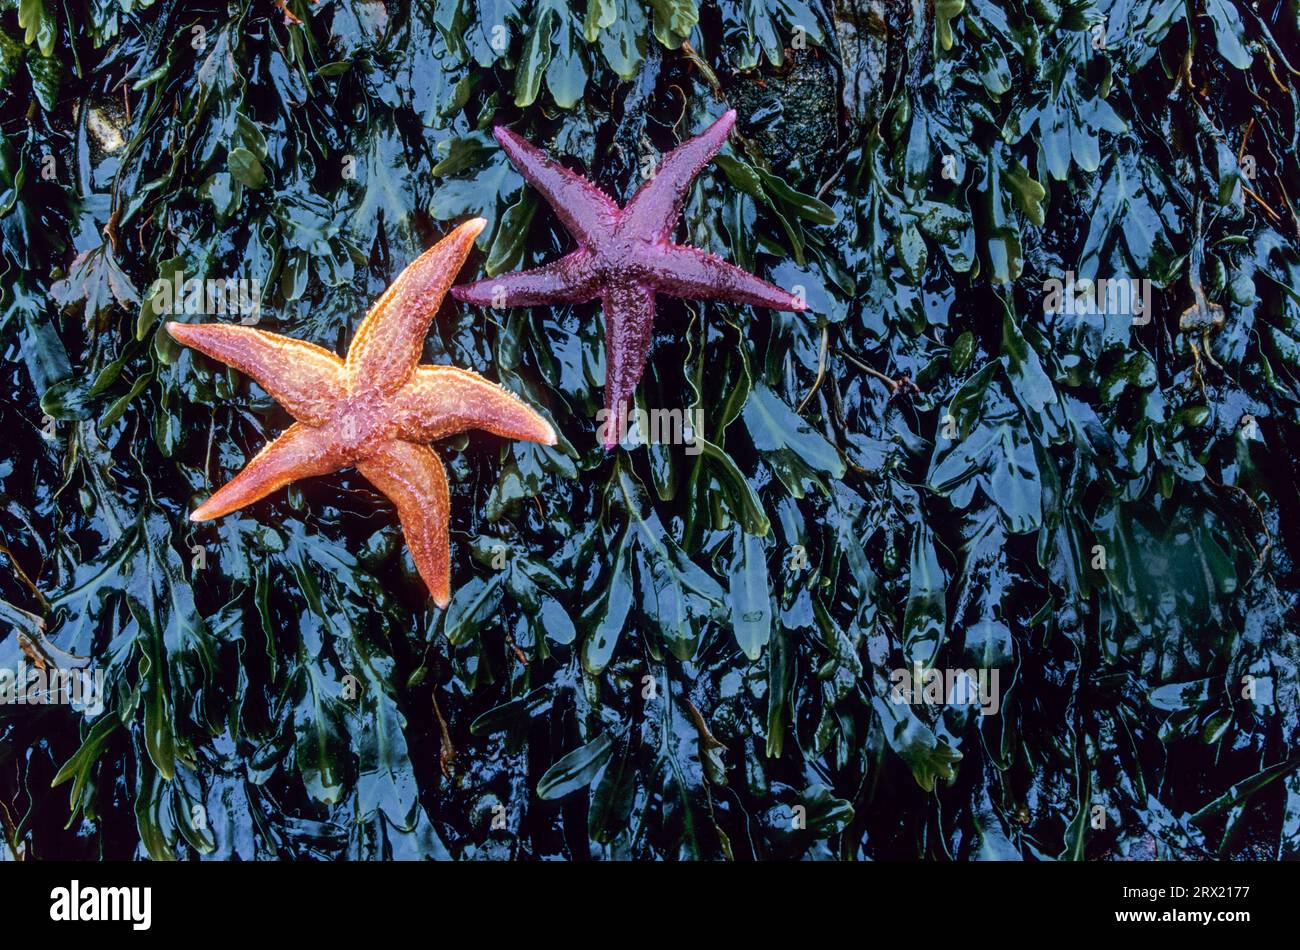 Common Starfish (Asterias rubens) has 5 arms (Photo starfish on seaweed) Common Starfish has five arms (Common Starfish) (Photo starfish on seaweed) Stock Photo